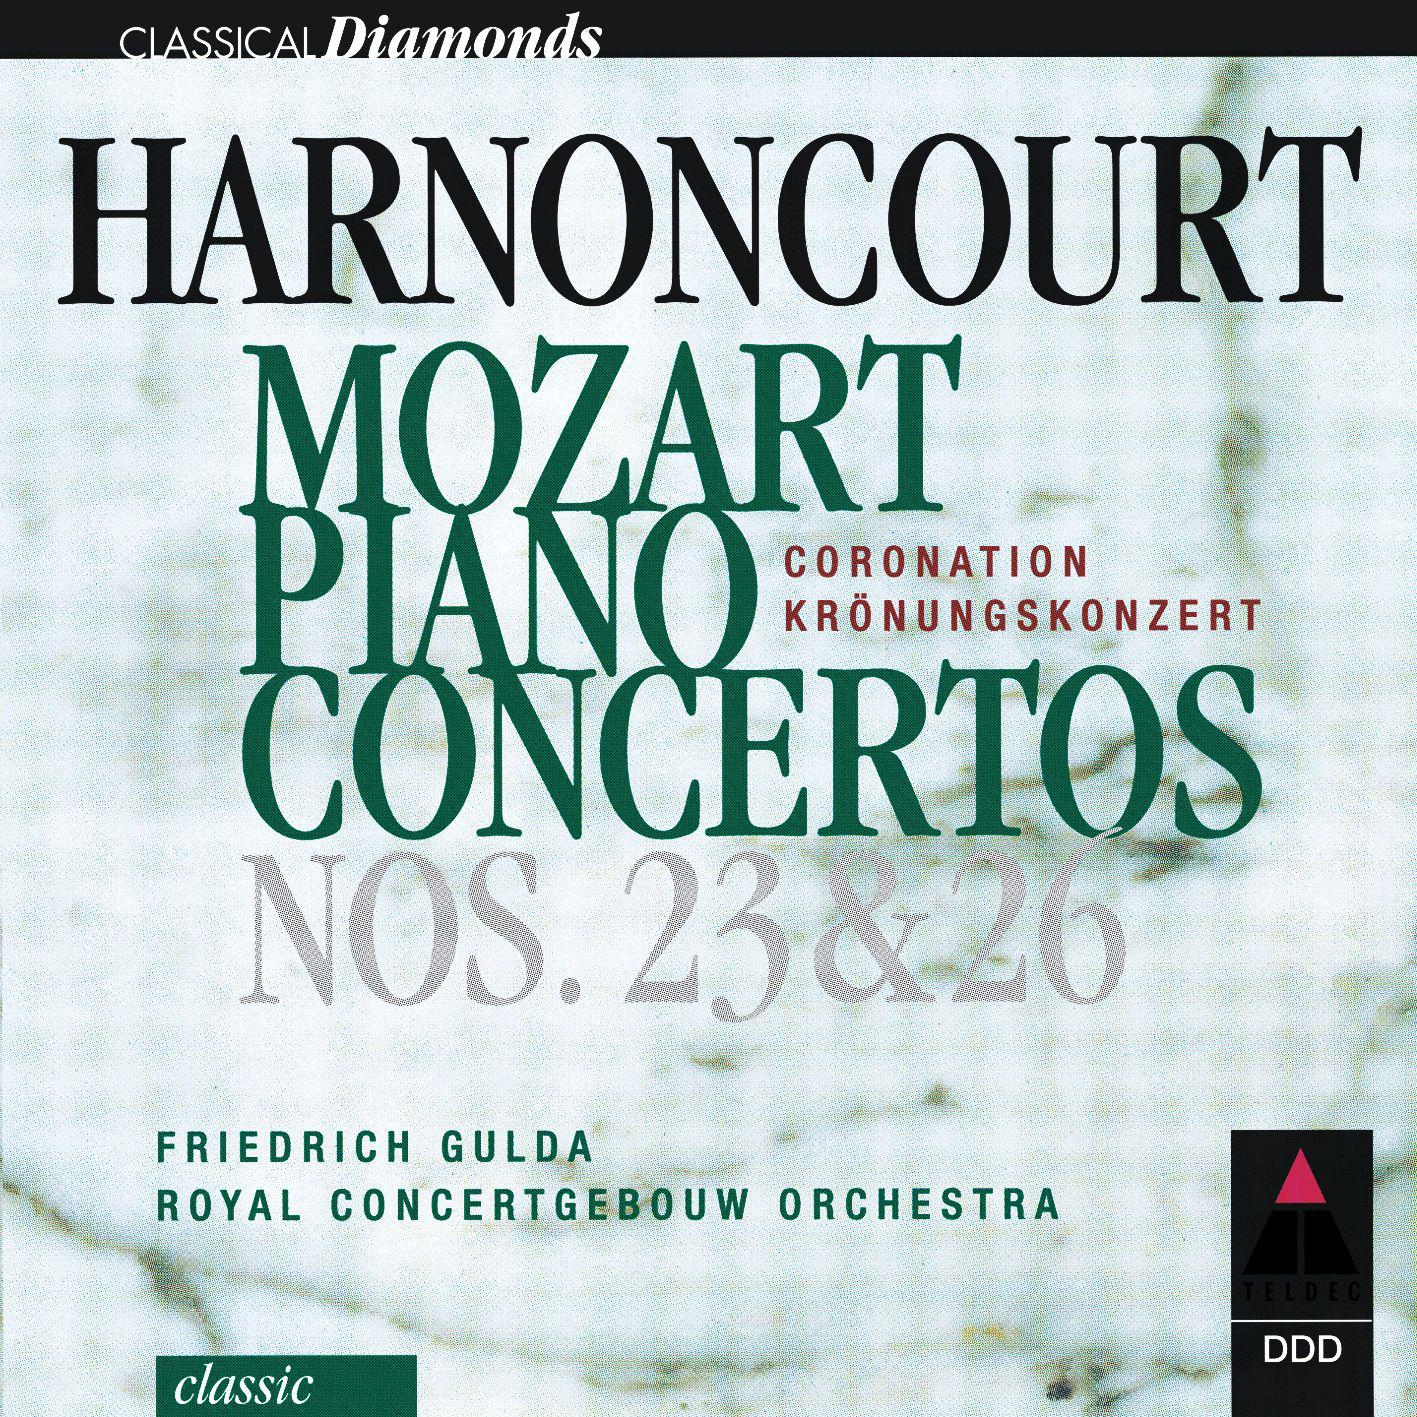 Piano Concerto No. 26 in D Major, K. 537 "Coronation":II. Larghetto